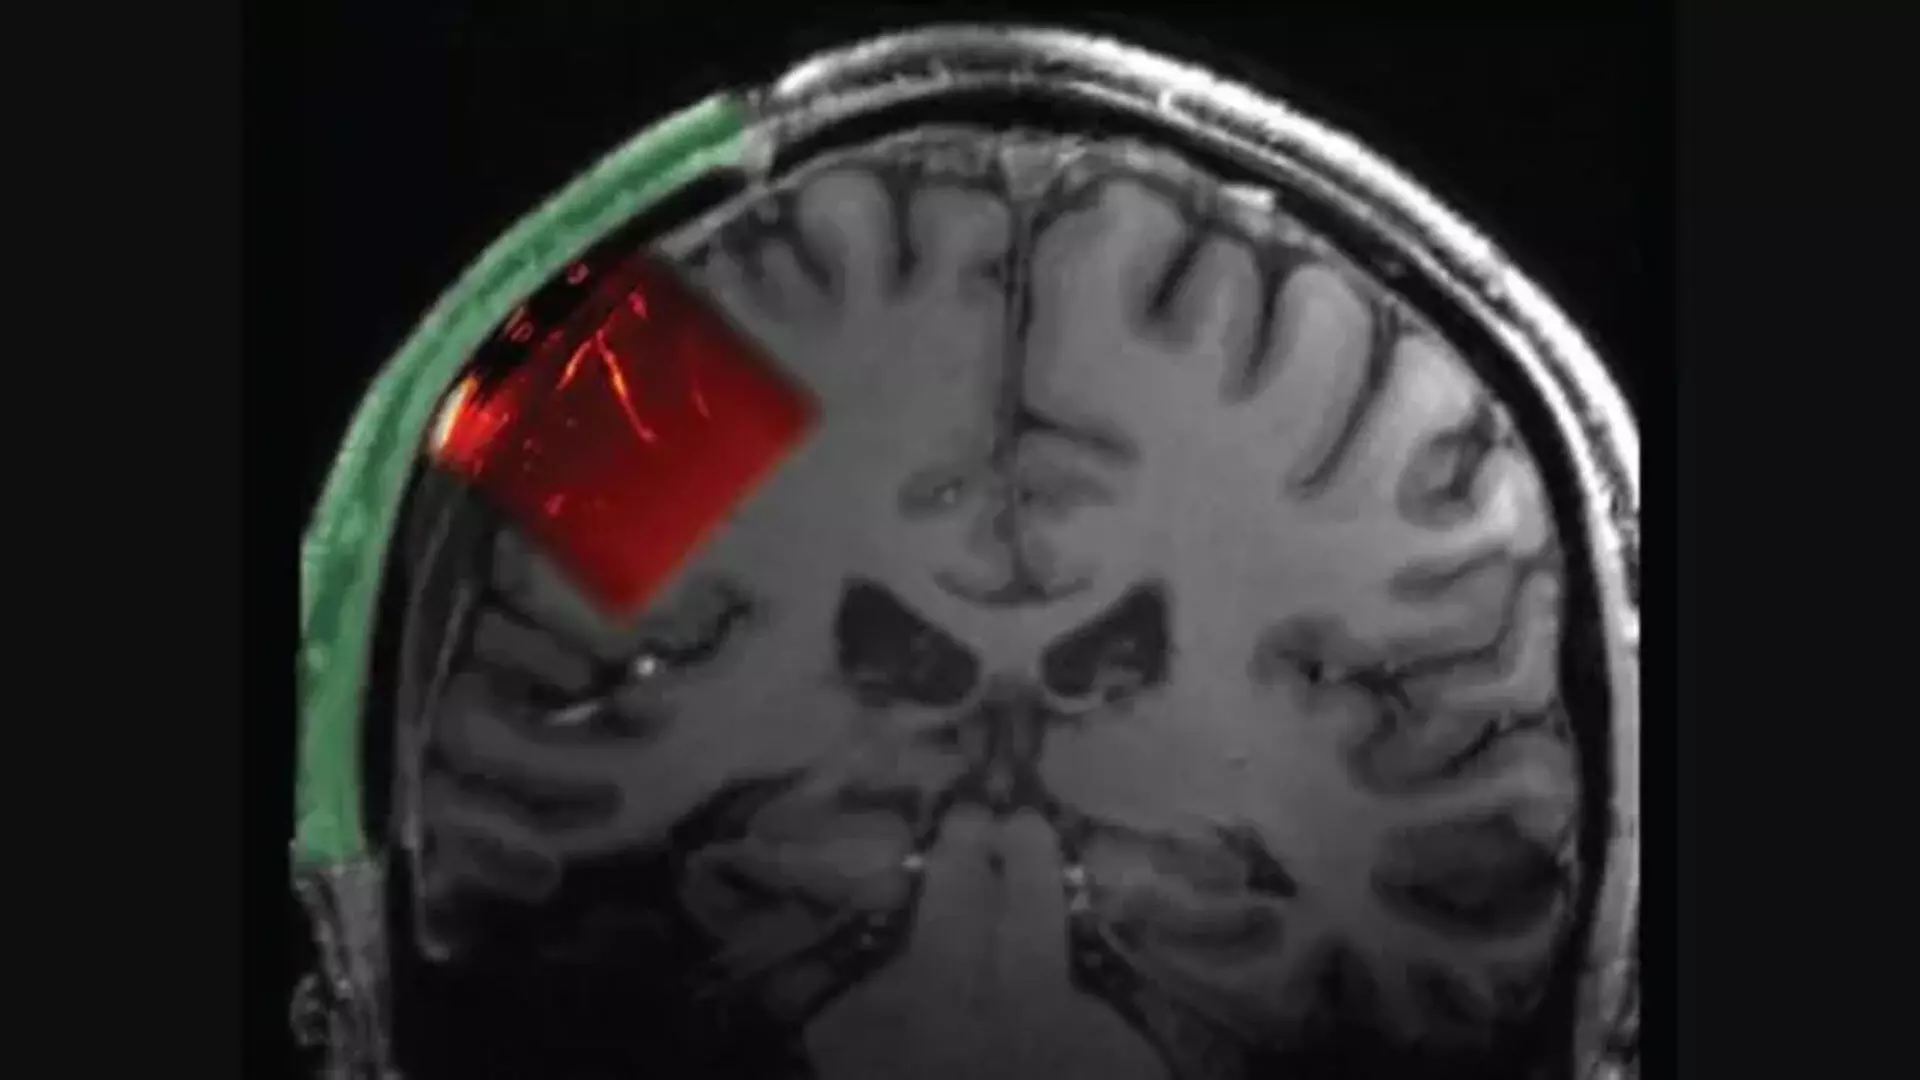 Ultrasound के माध्यम से मस्तिष्क को पढ़ने के लिए शख्स  की खोपड़ी में डाली खिड़की